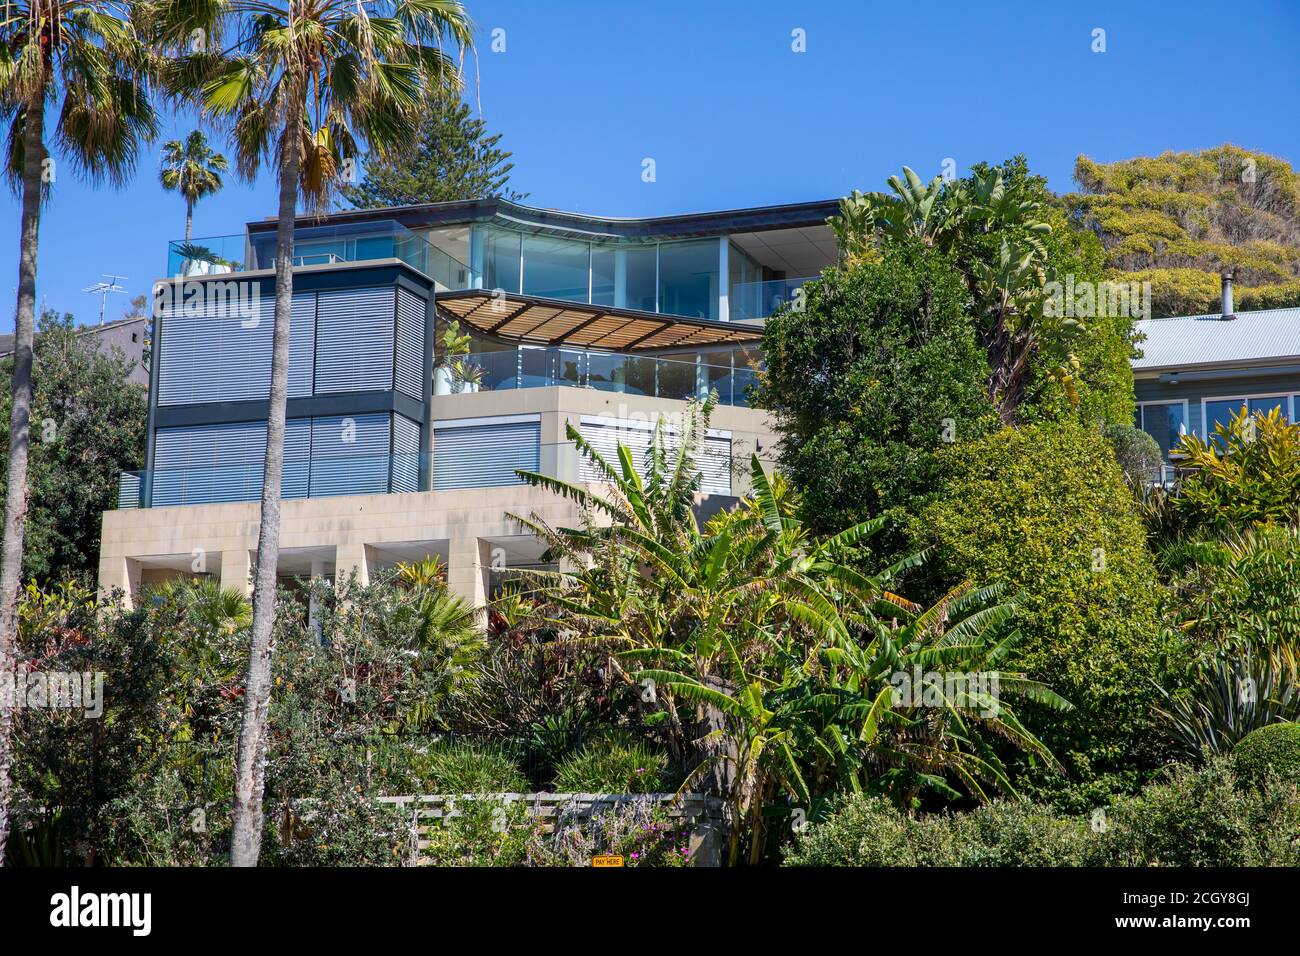 Whale Beach faubourg de Sydney, maison individuelle de luxe et jardins tropicaux verts, Sydney, Australie Banque D'Images